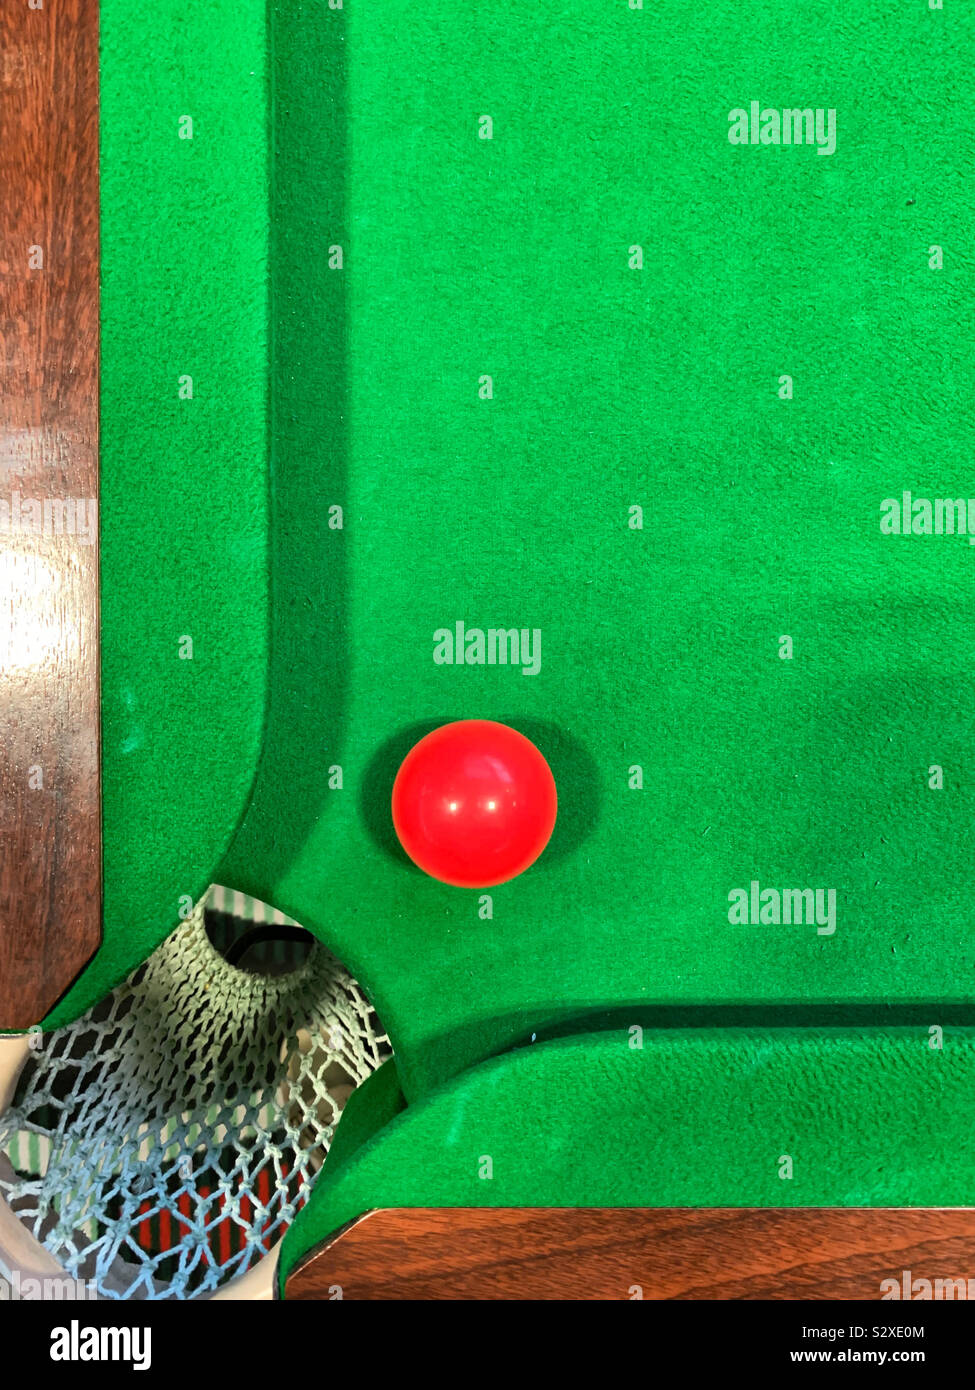 Boule de billard rouge près d'une poche sur une table de billard vert Banque D'Images